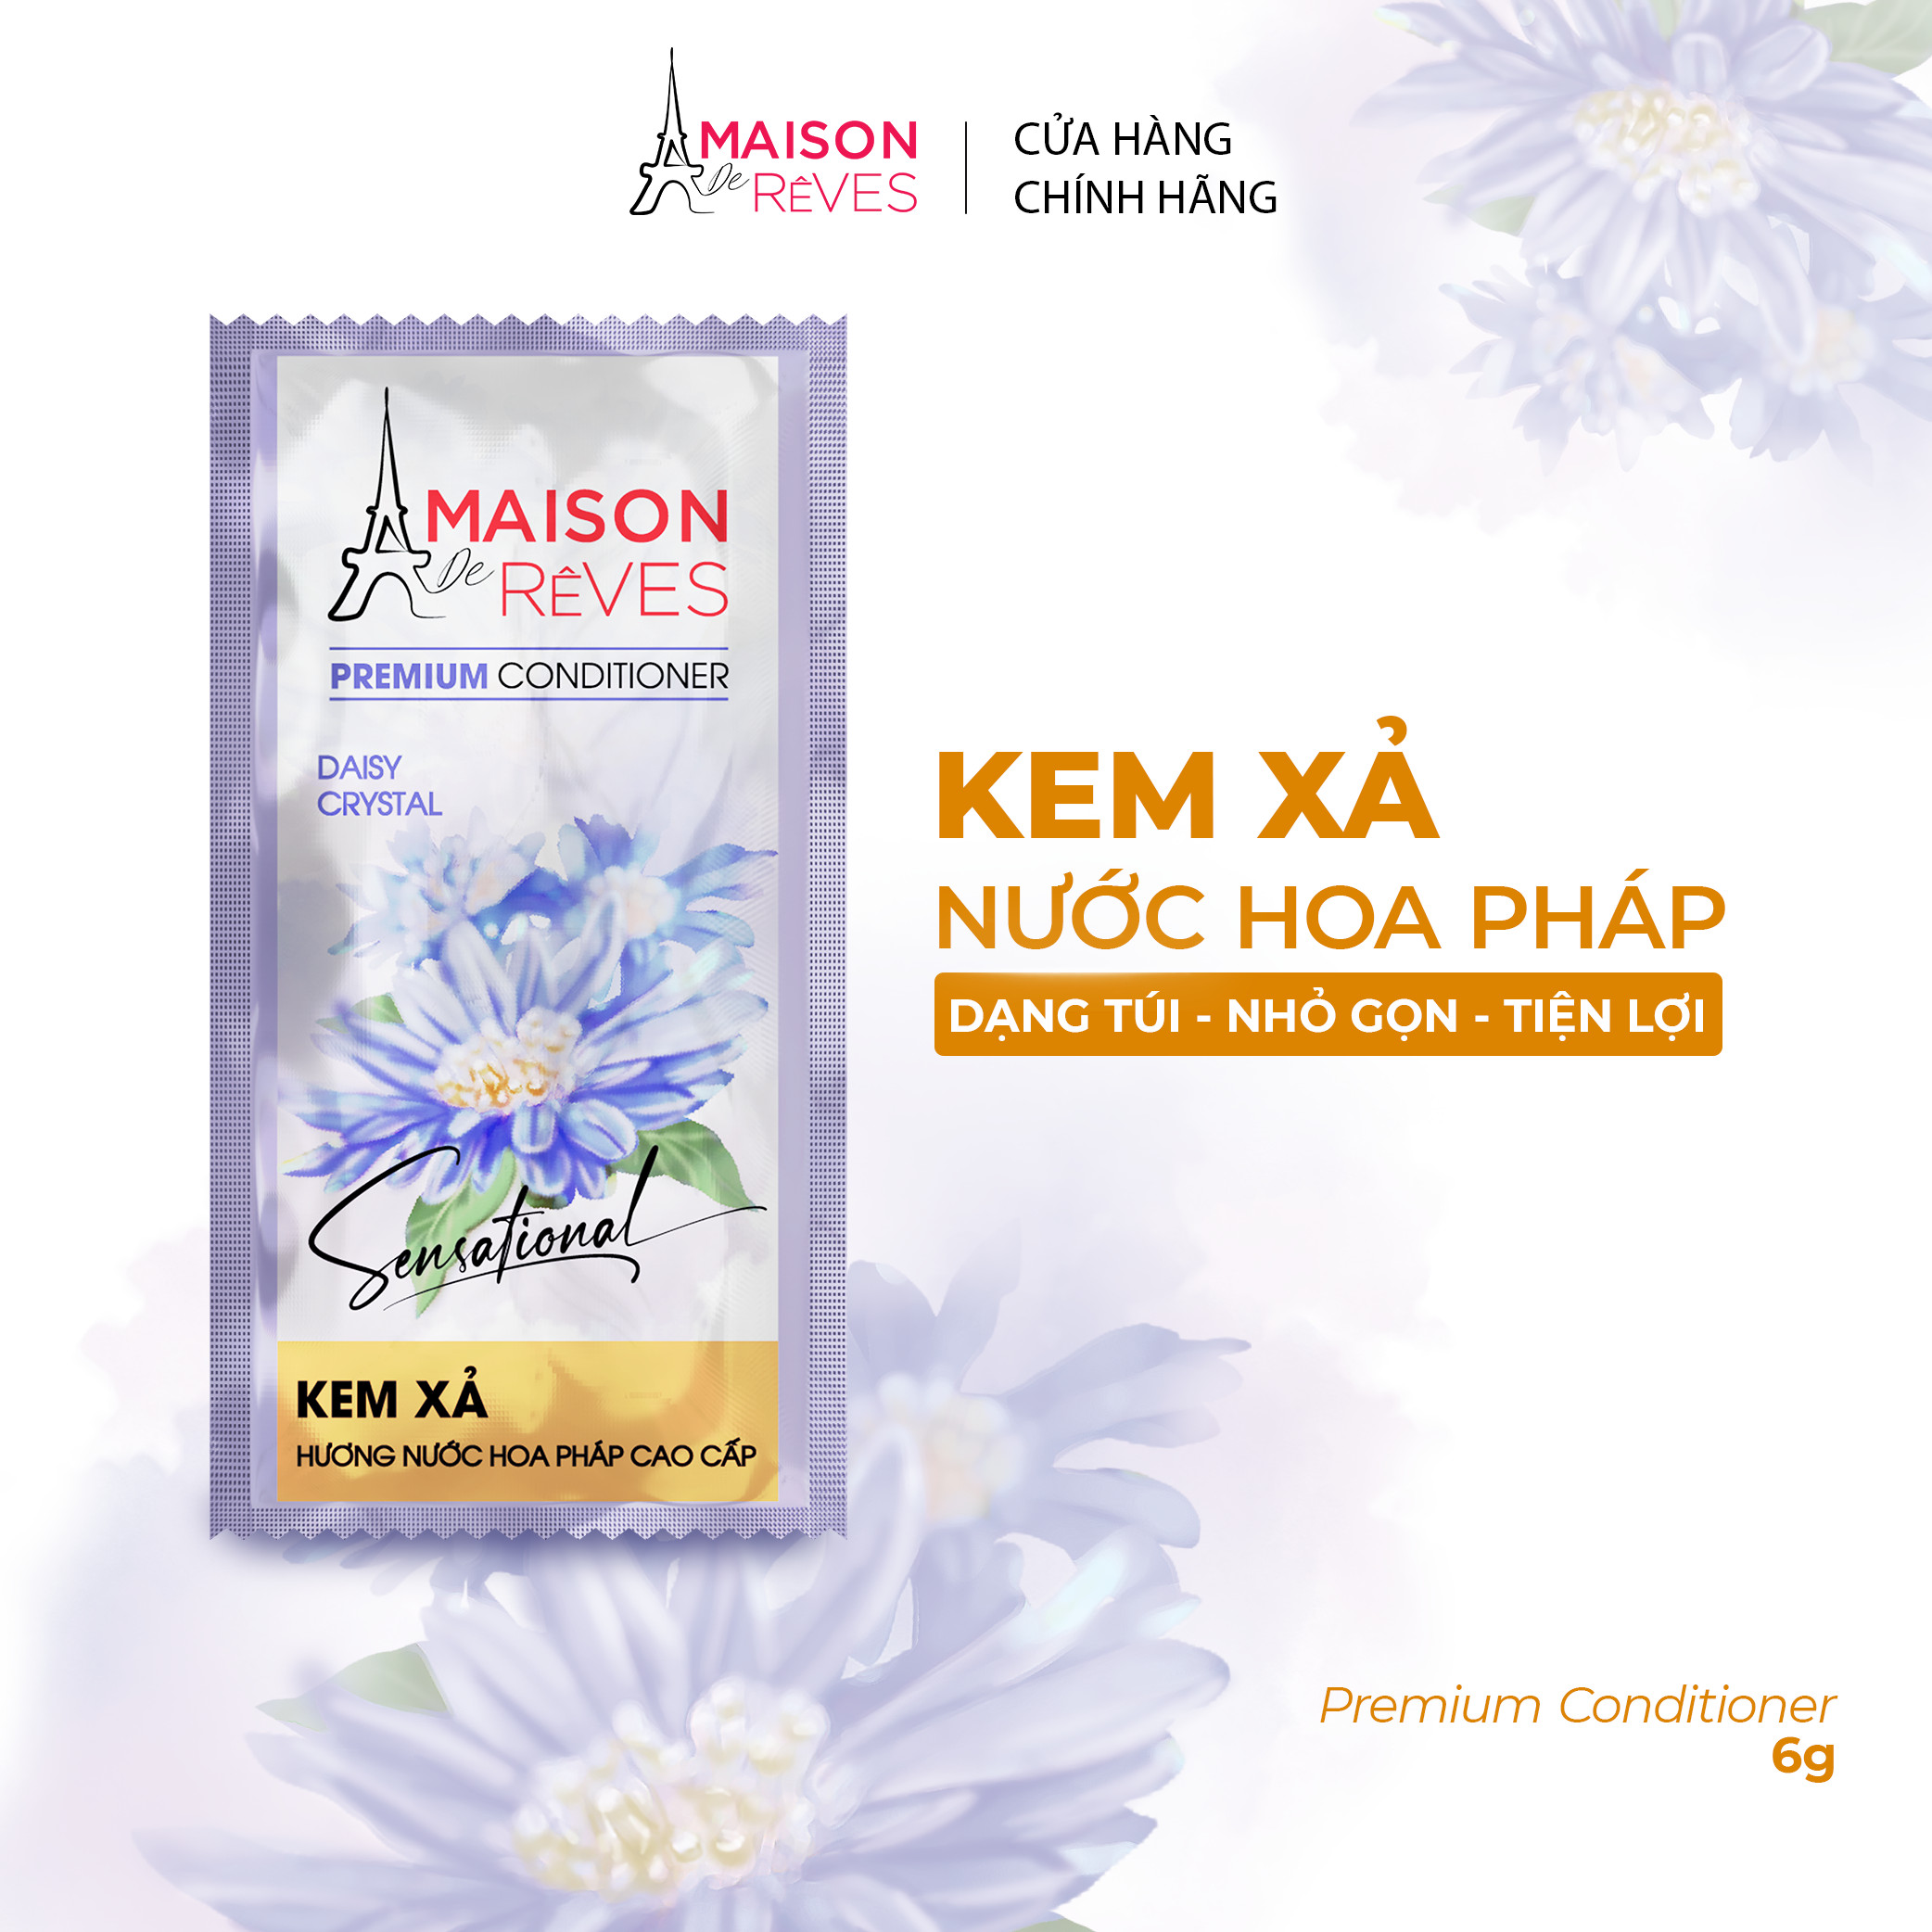 Kem xả dây hương nước hoa Pháp cao cấp Maison De Rêves hoa Cúc pha lê, phục hồi hư tổn và giữ màu tóc nhuộm - 6g